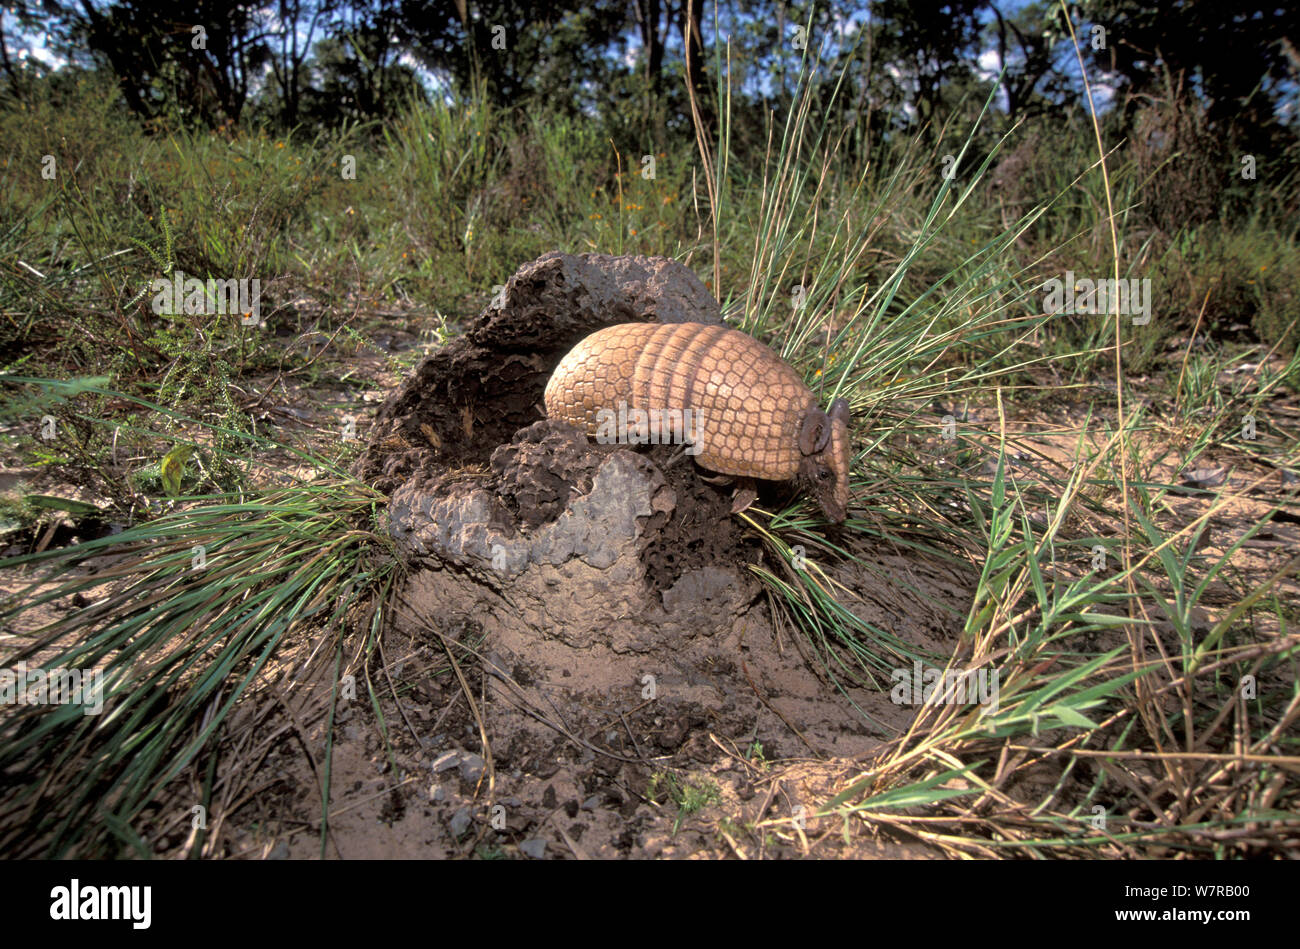 Armadillo de tres bandas (Tolypeutes tricinctus) forrajeando en termitero, cerrado del estado de Piauí, noreste de Brasil. Foto de stock